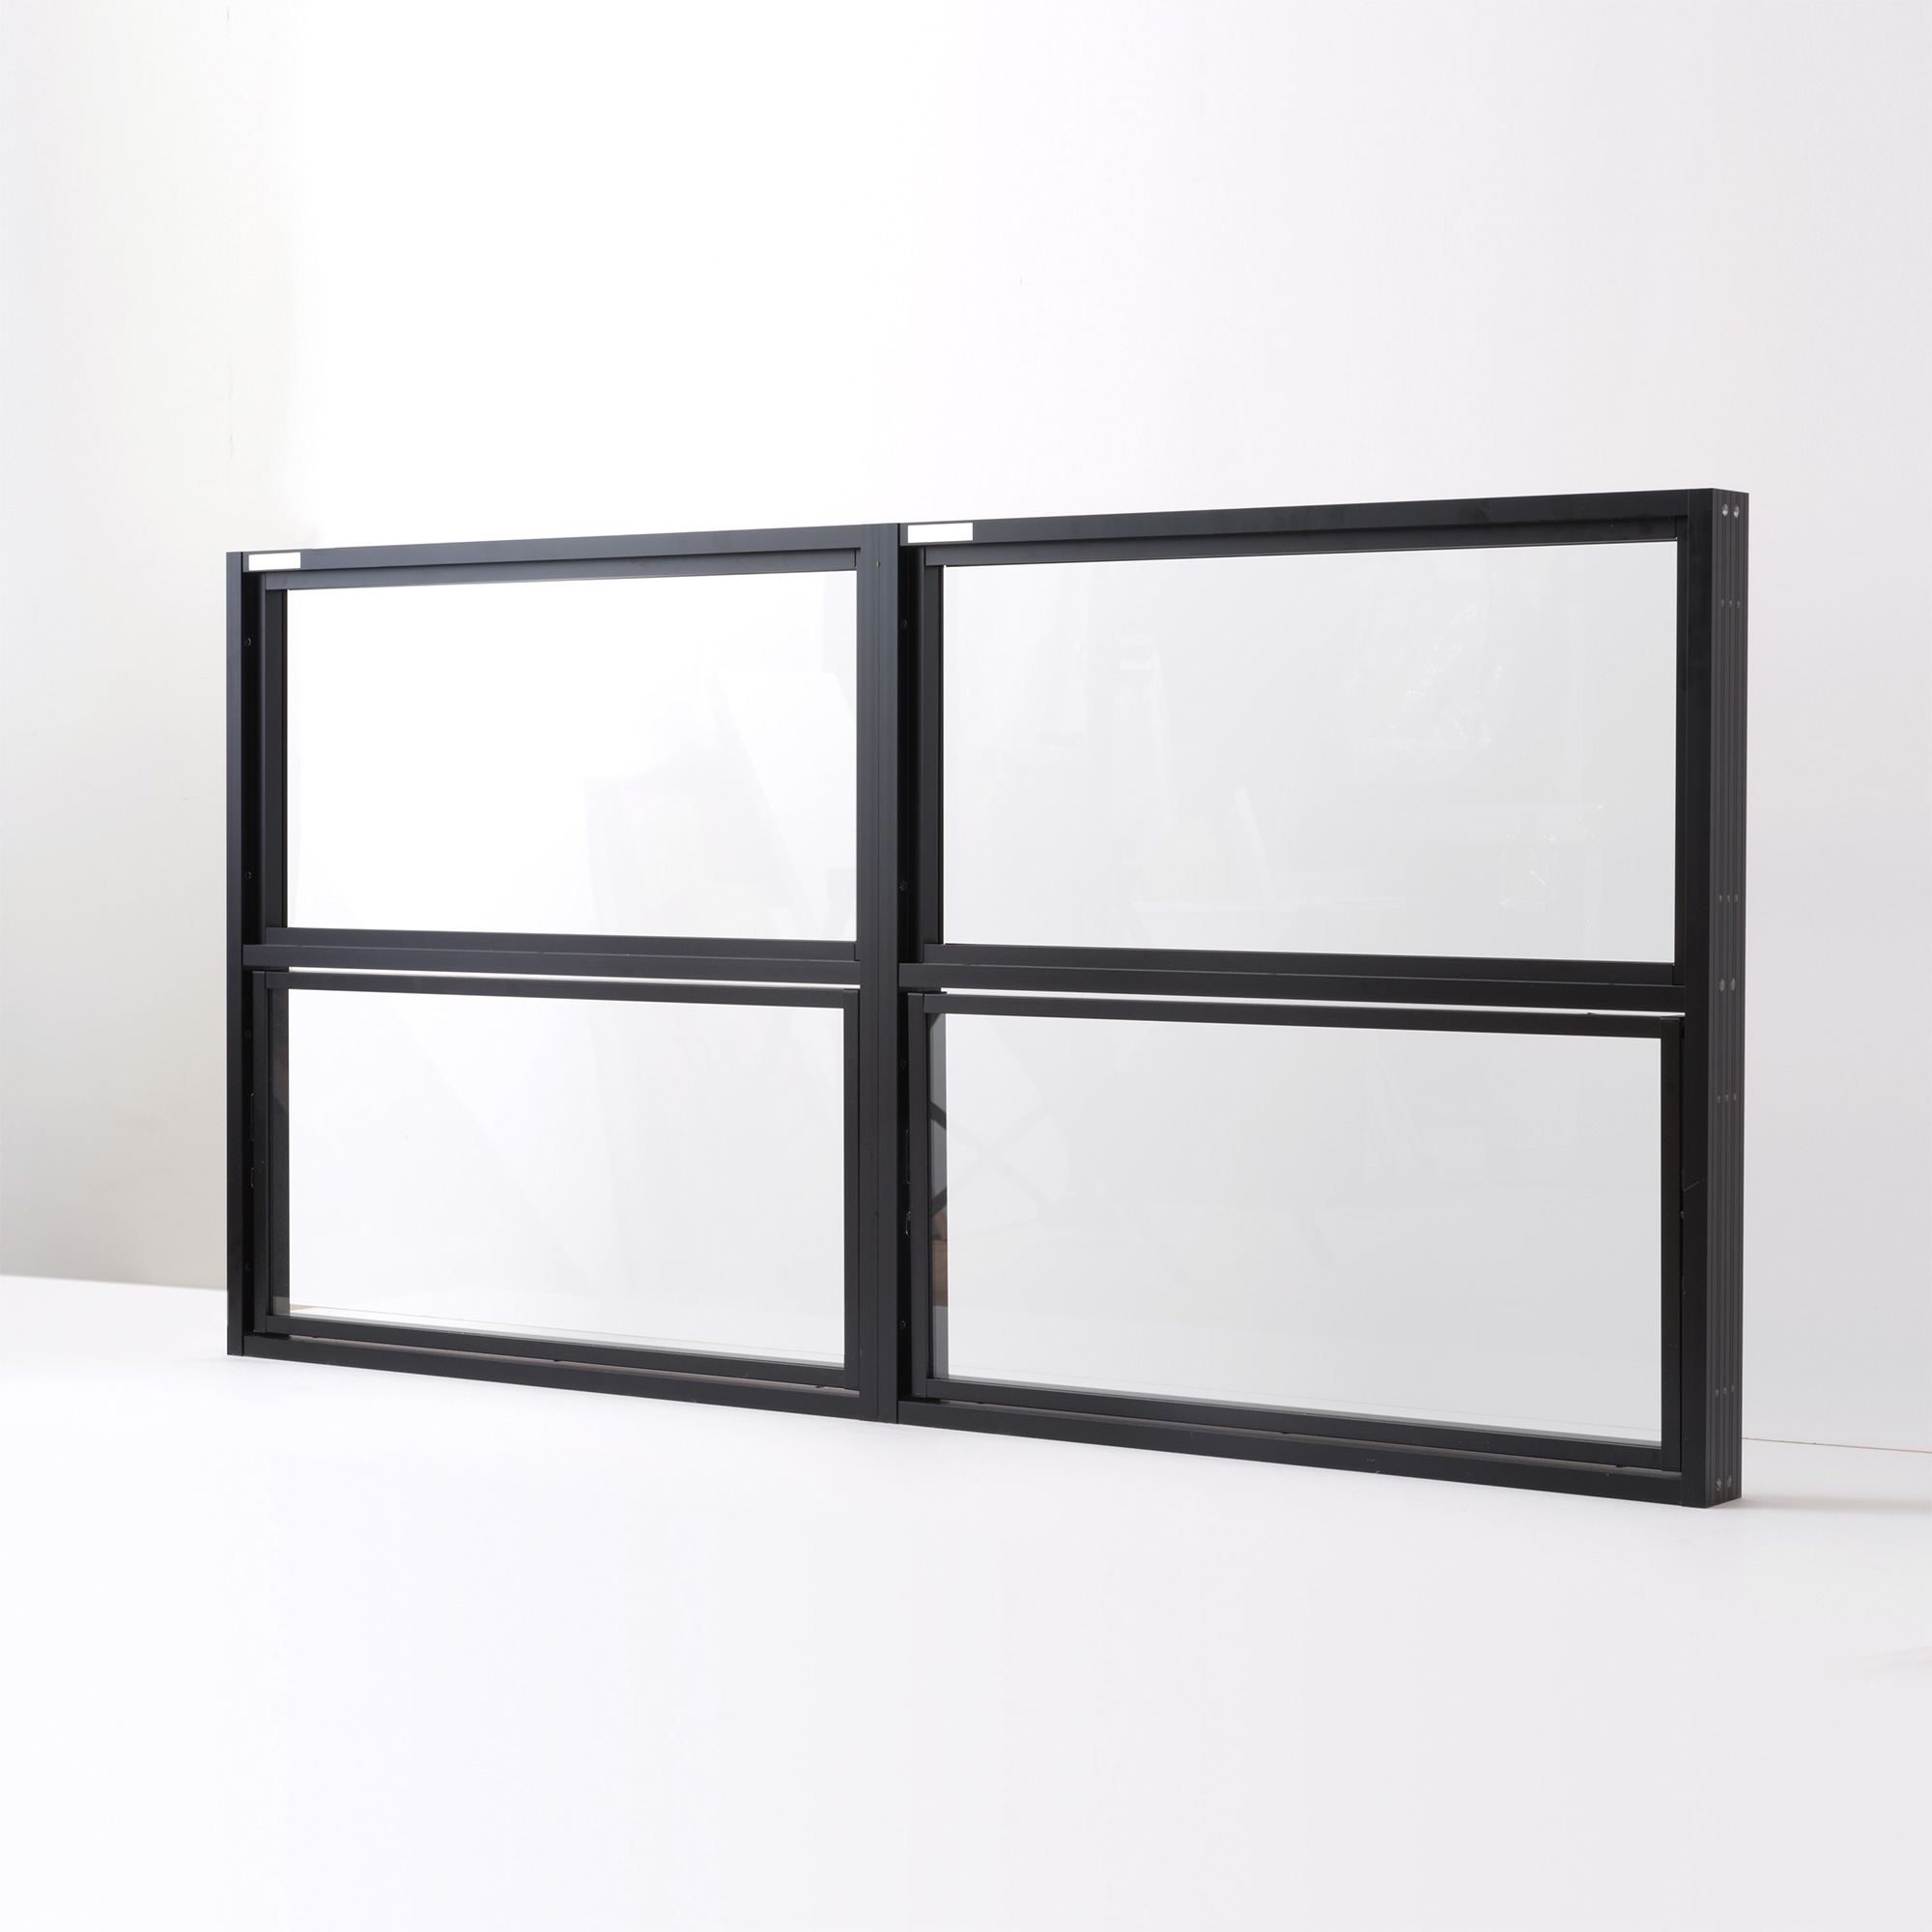 室内アルミサッシ 回転窓＋回転窓 ブラック 樹脂パネル DW-DR013-22-G201 FIX窓（上）＋回転窓（下）の2連結　W1400 H700（W700 上H350 下H350）クリアガラス